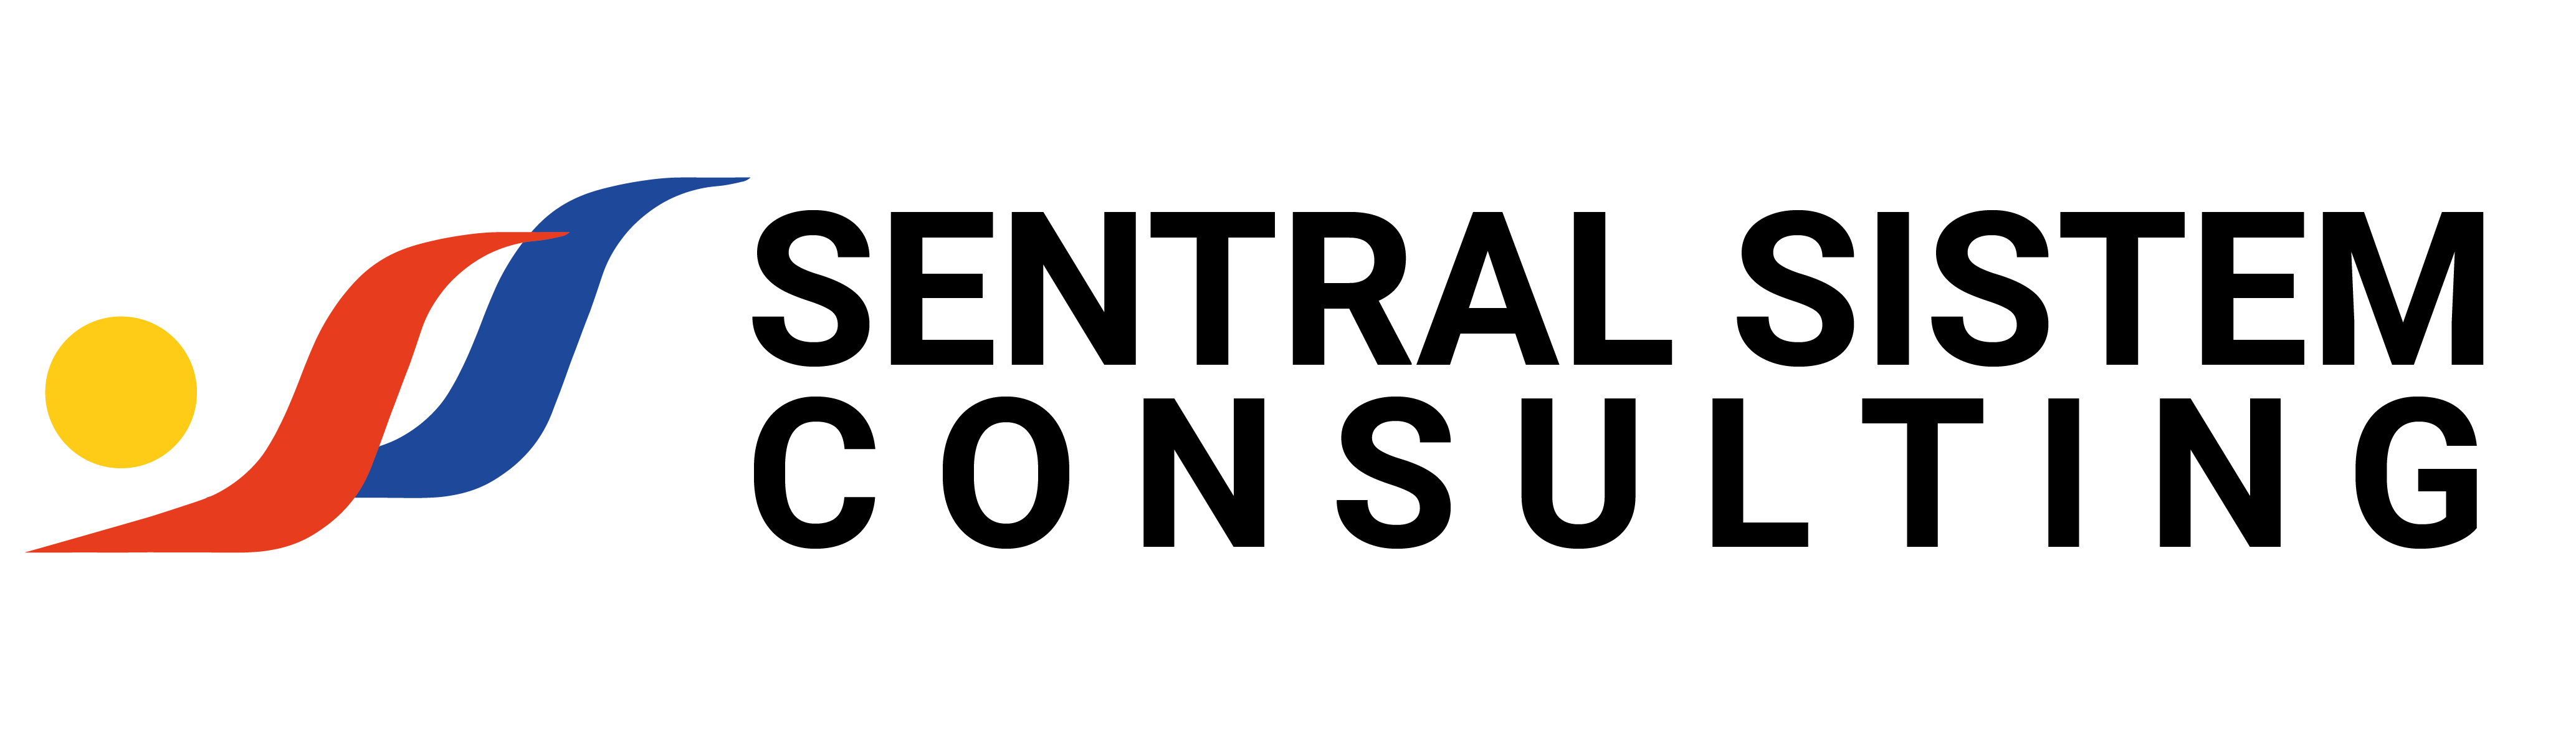 Logo sentral sistem cunsulting